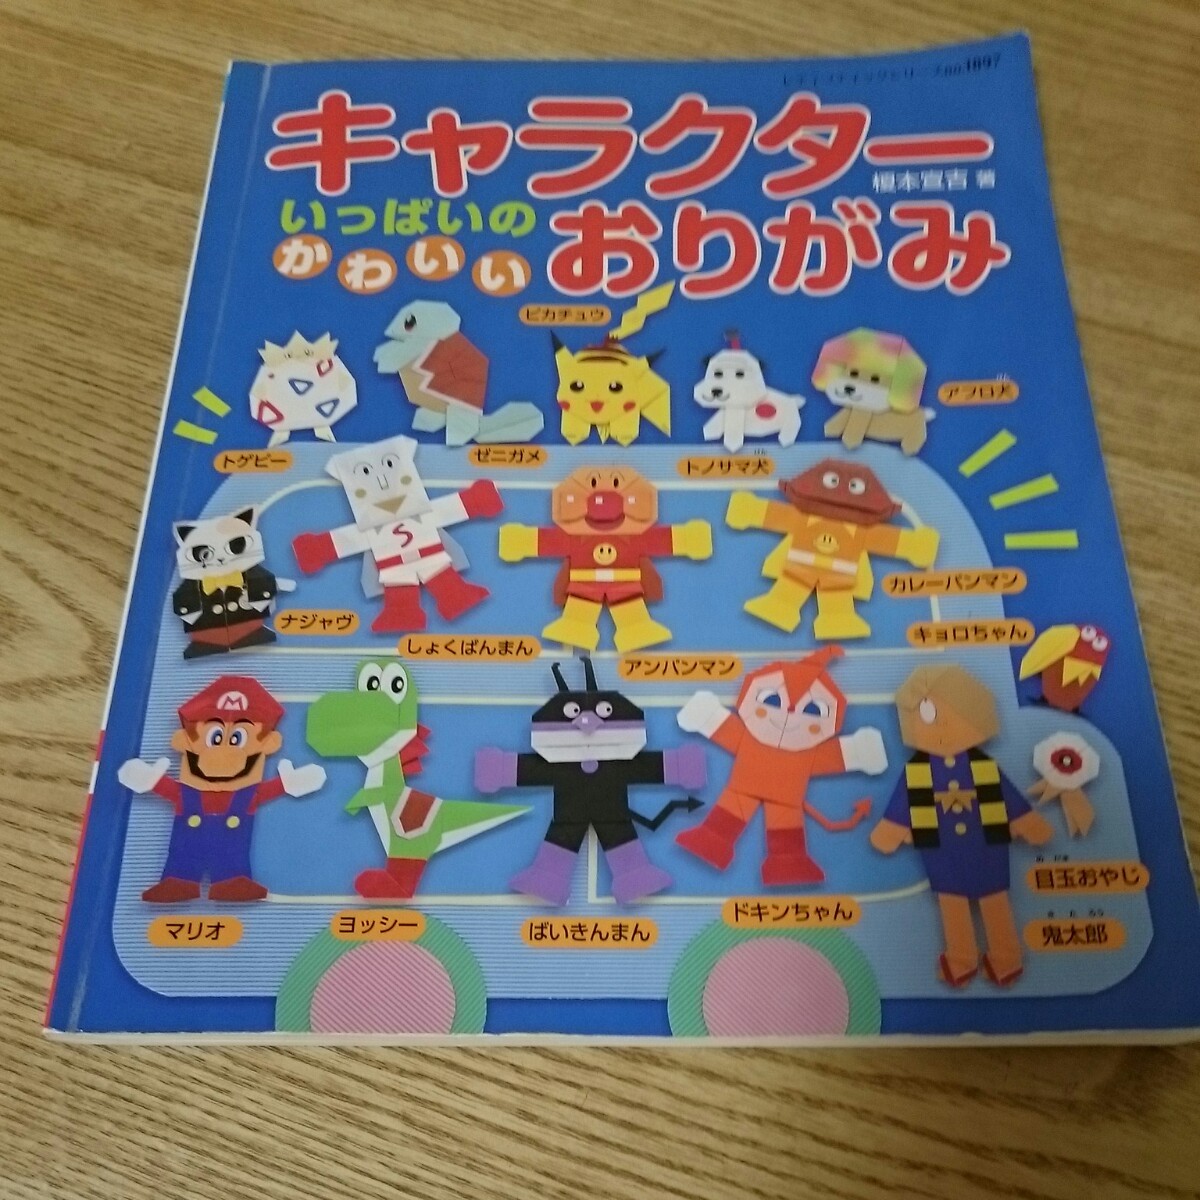 Paypayフリマ キャラクター折り紙の本